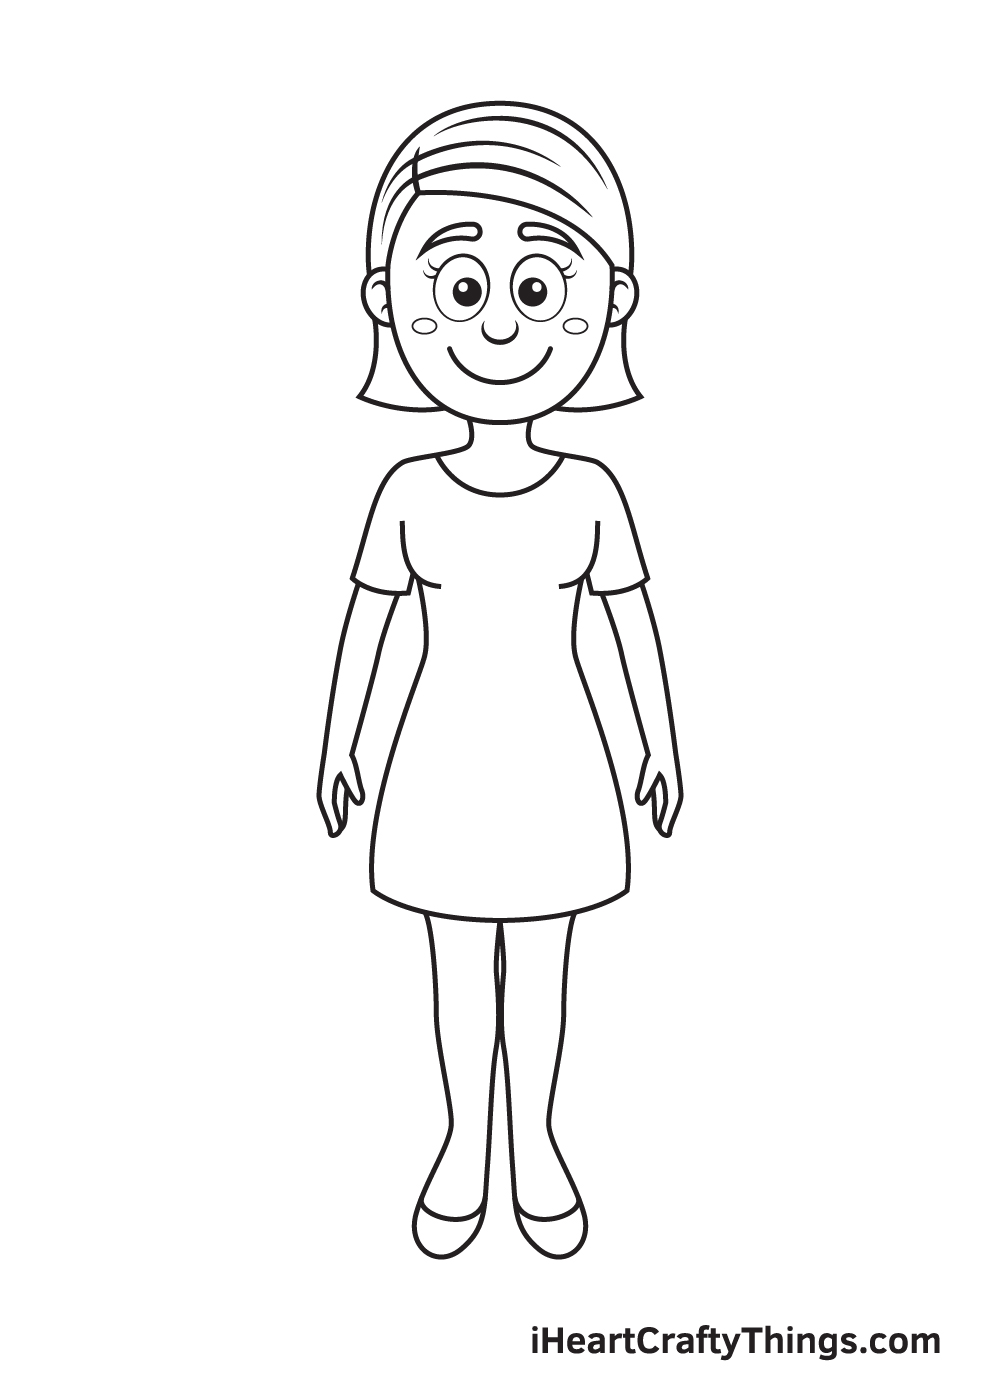 Woman DRAWING – STEP 9 - Hướng dẫn chi tiết cách vẽ cô gái đơn giản với 9 bước cơ bản